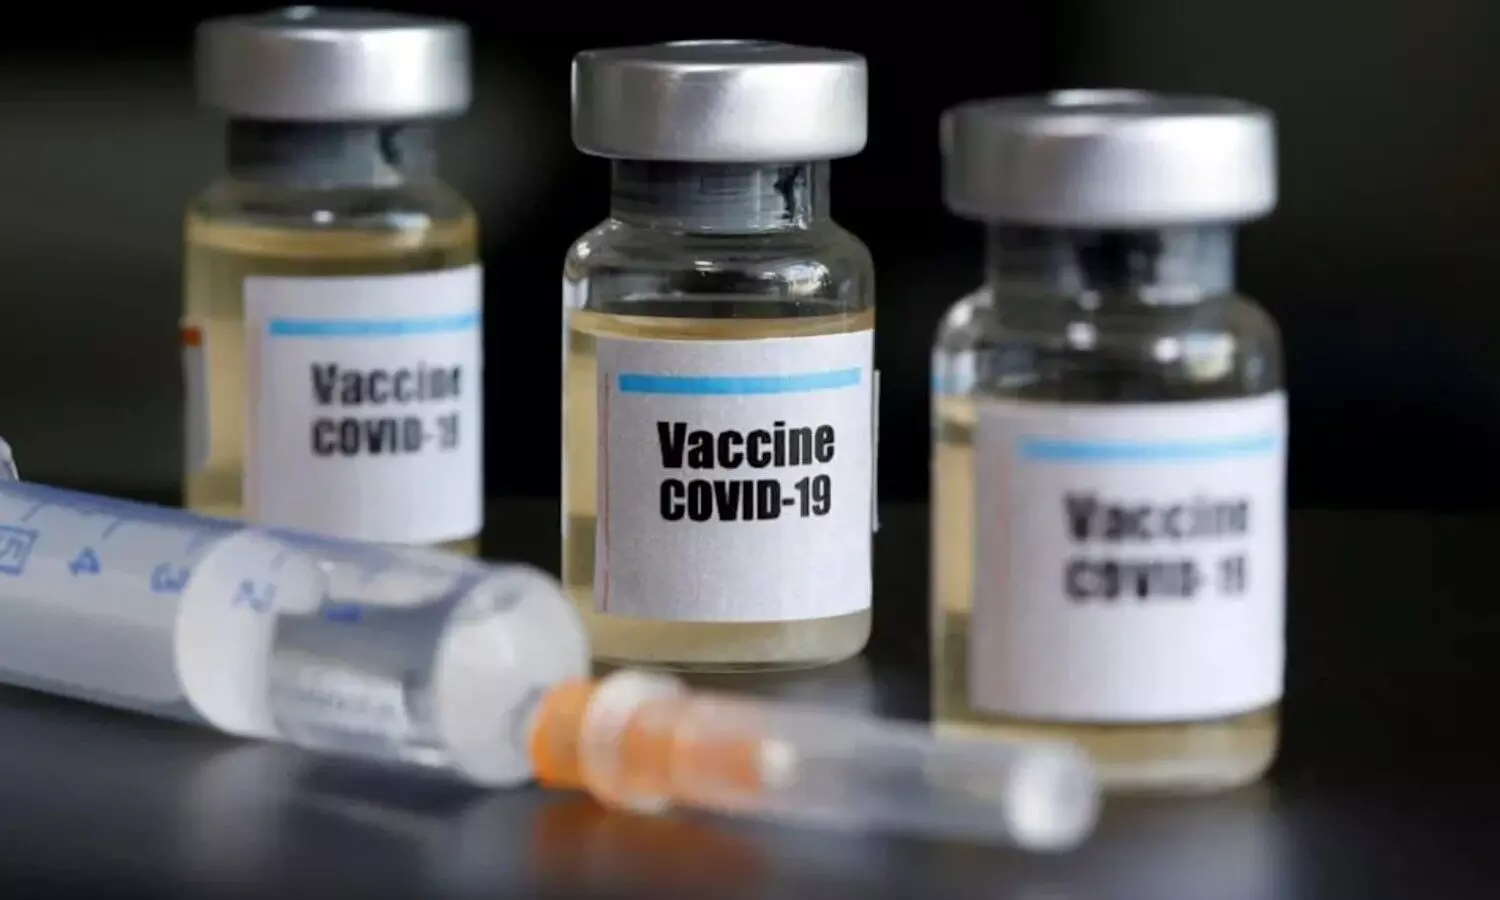 इस अमेरिकी फार्मा कंपनी का दावा, सिंगल डोज वाला टीका ही डेल्टा समेत हर वेरिएंट पर है असरदार